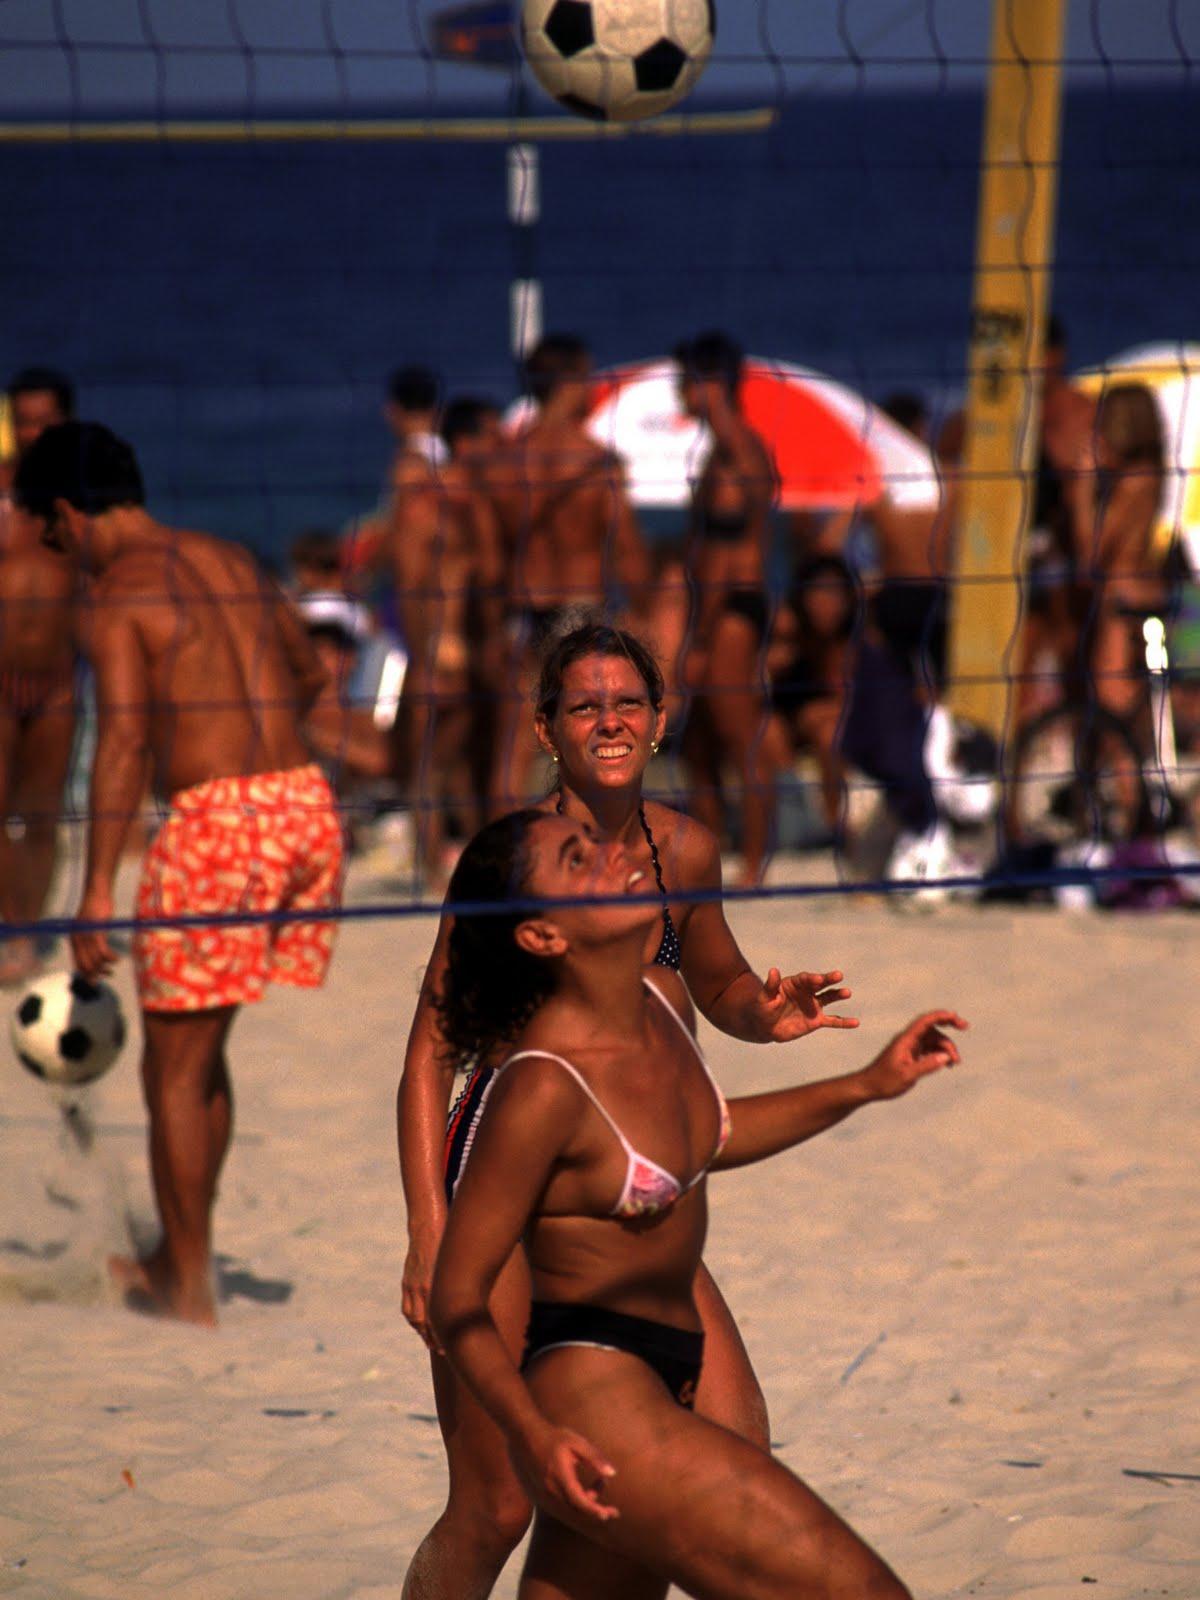 Sport wie Footvolley an der Copacabana in Rio